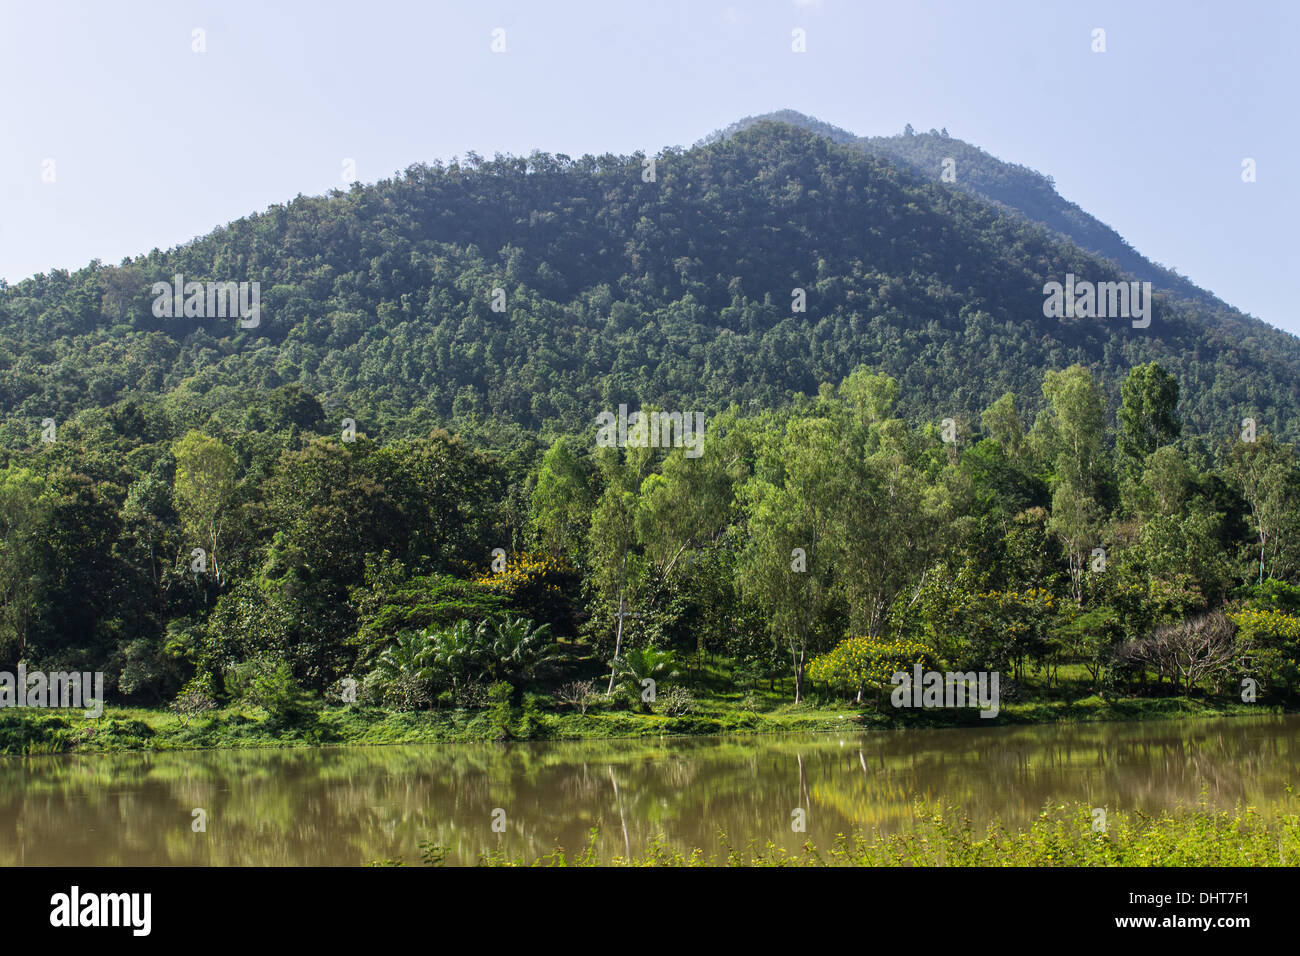 Barrage et Mountain, Chiang Mai en Thaïlande du Nord. Beau paysage Banque D'Images